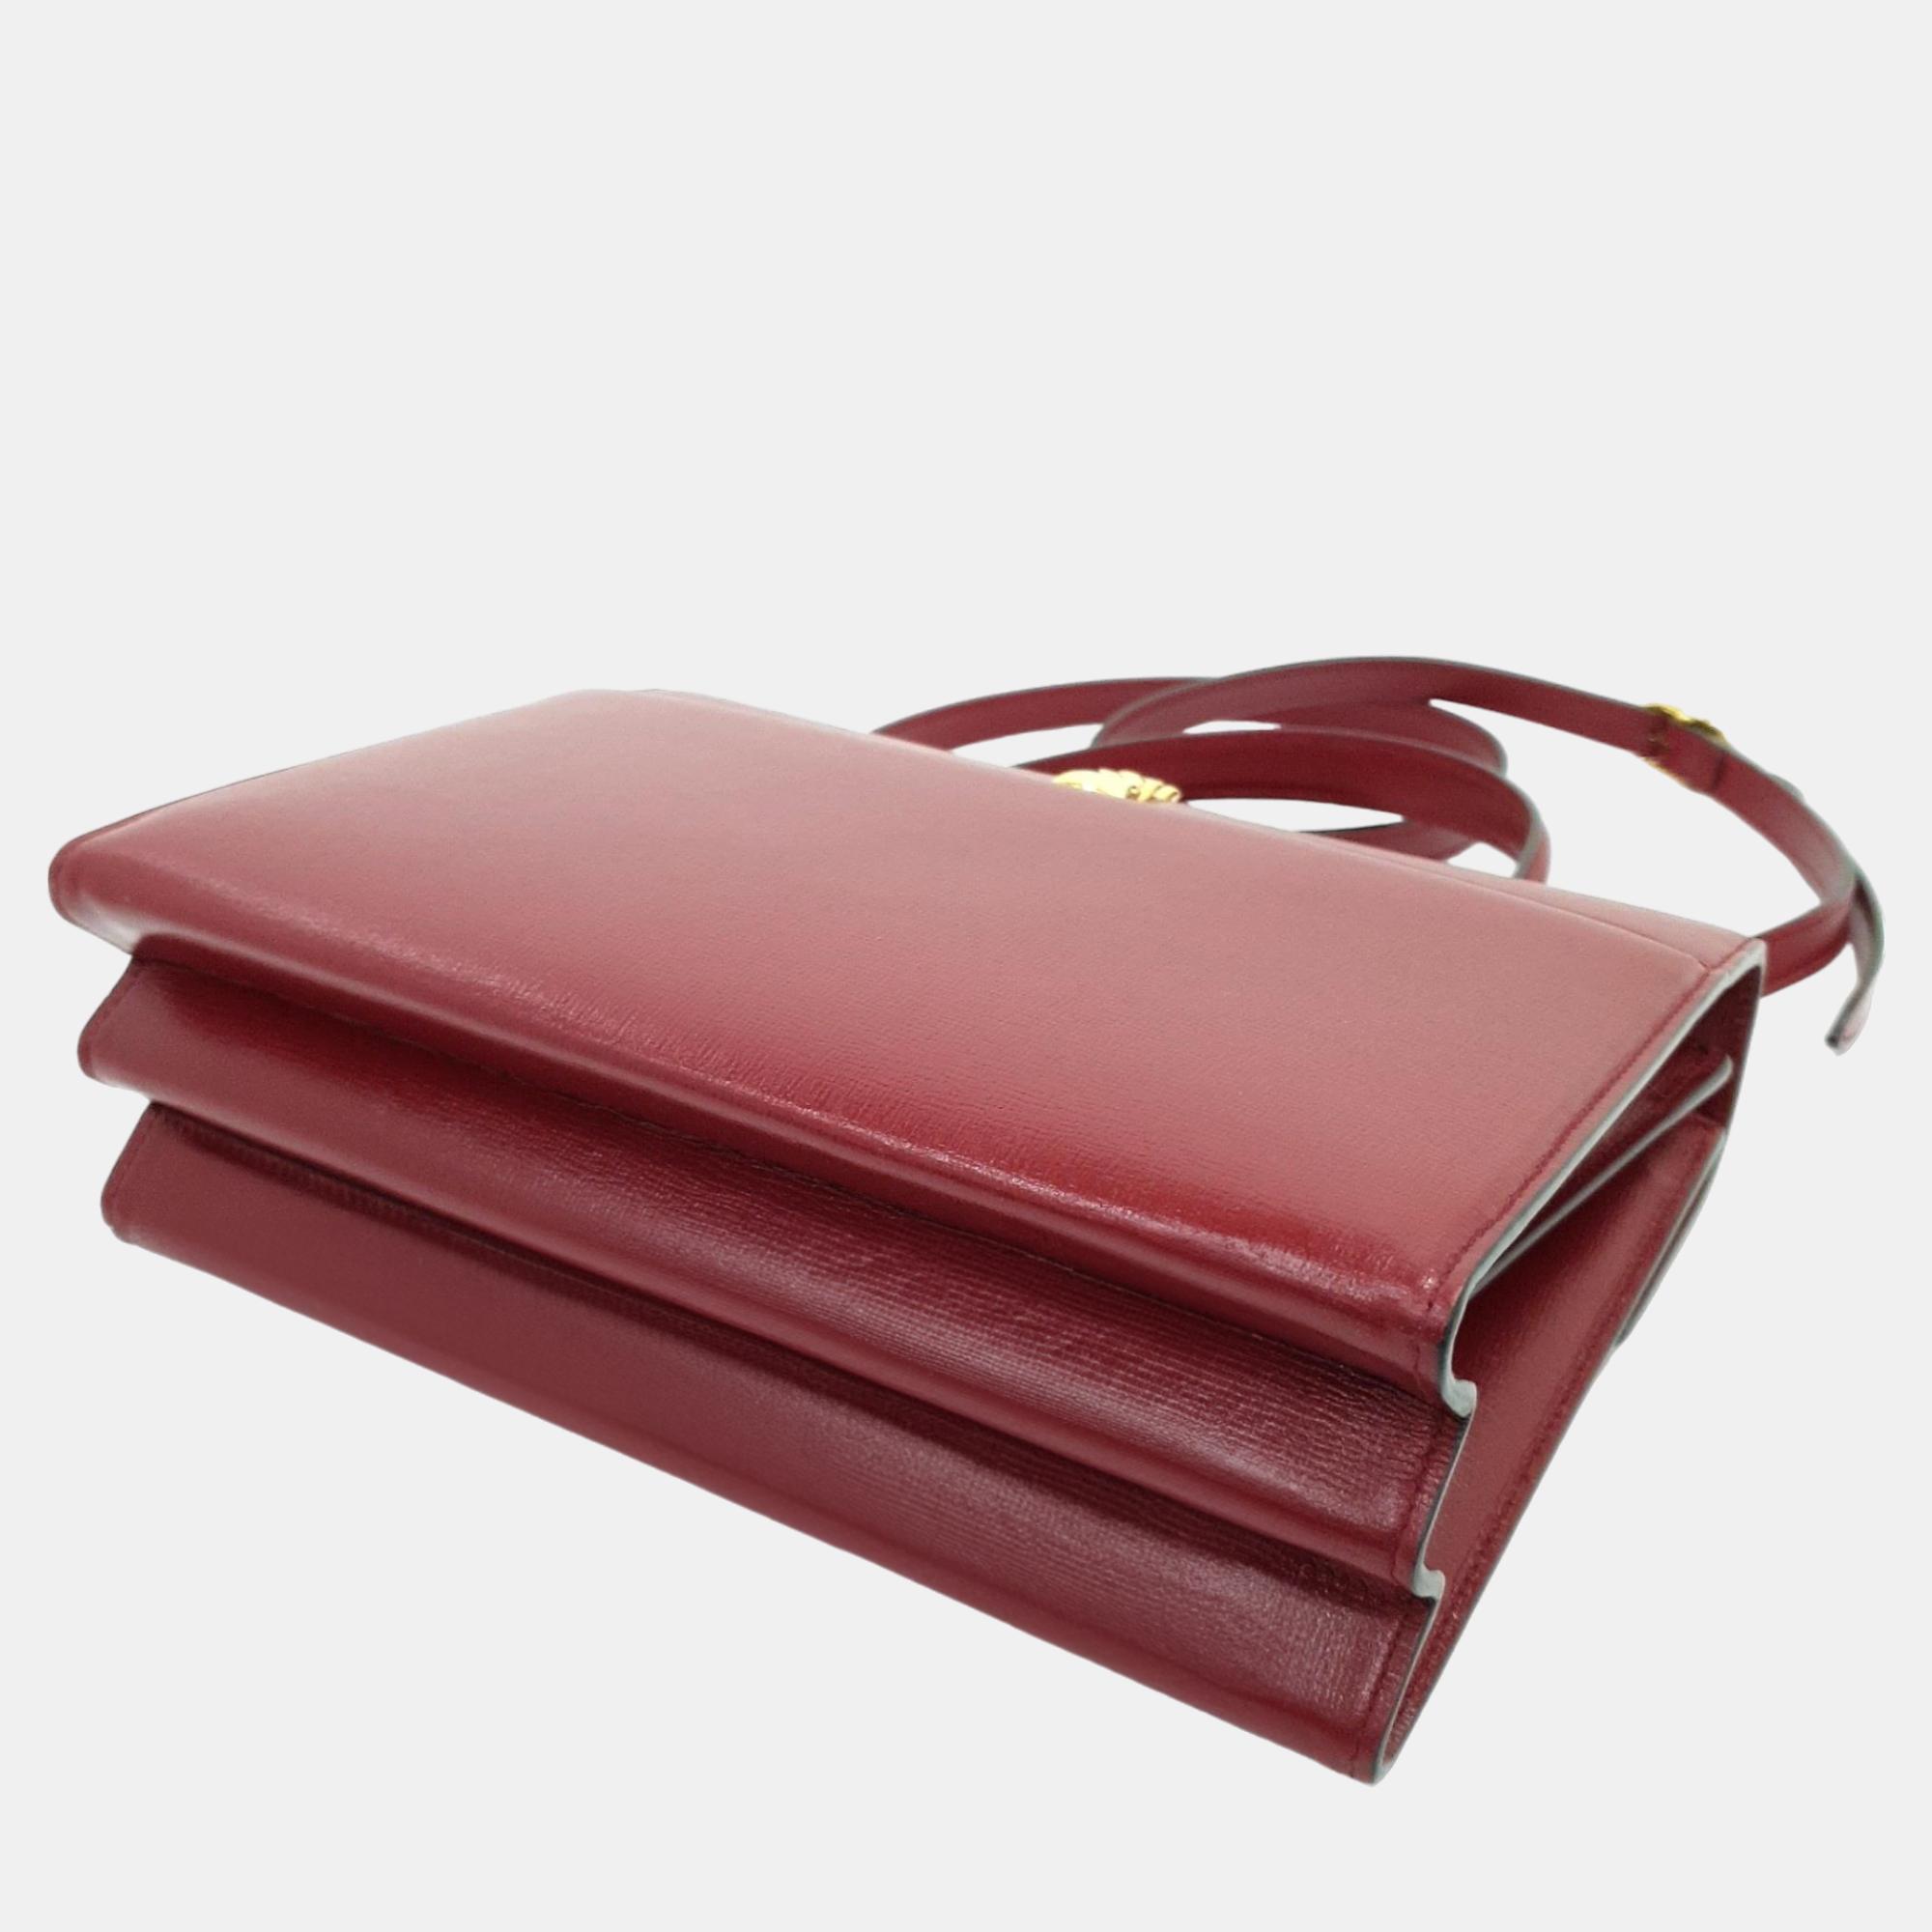 Gucci Sylvie 1969 Top Handle Bag (602781)